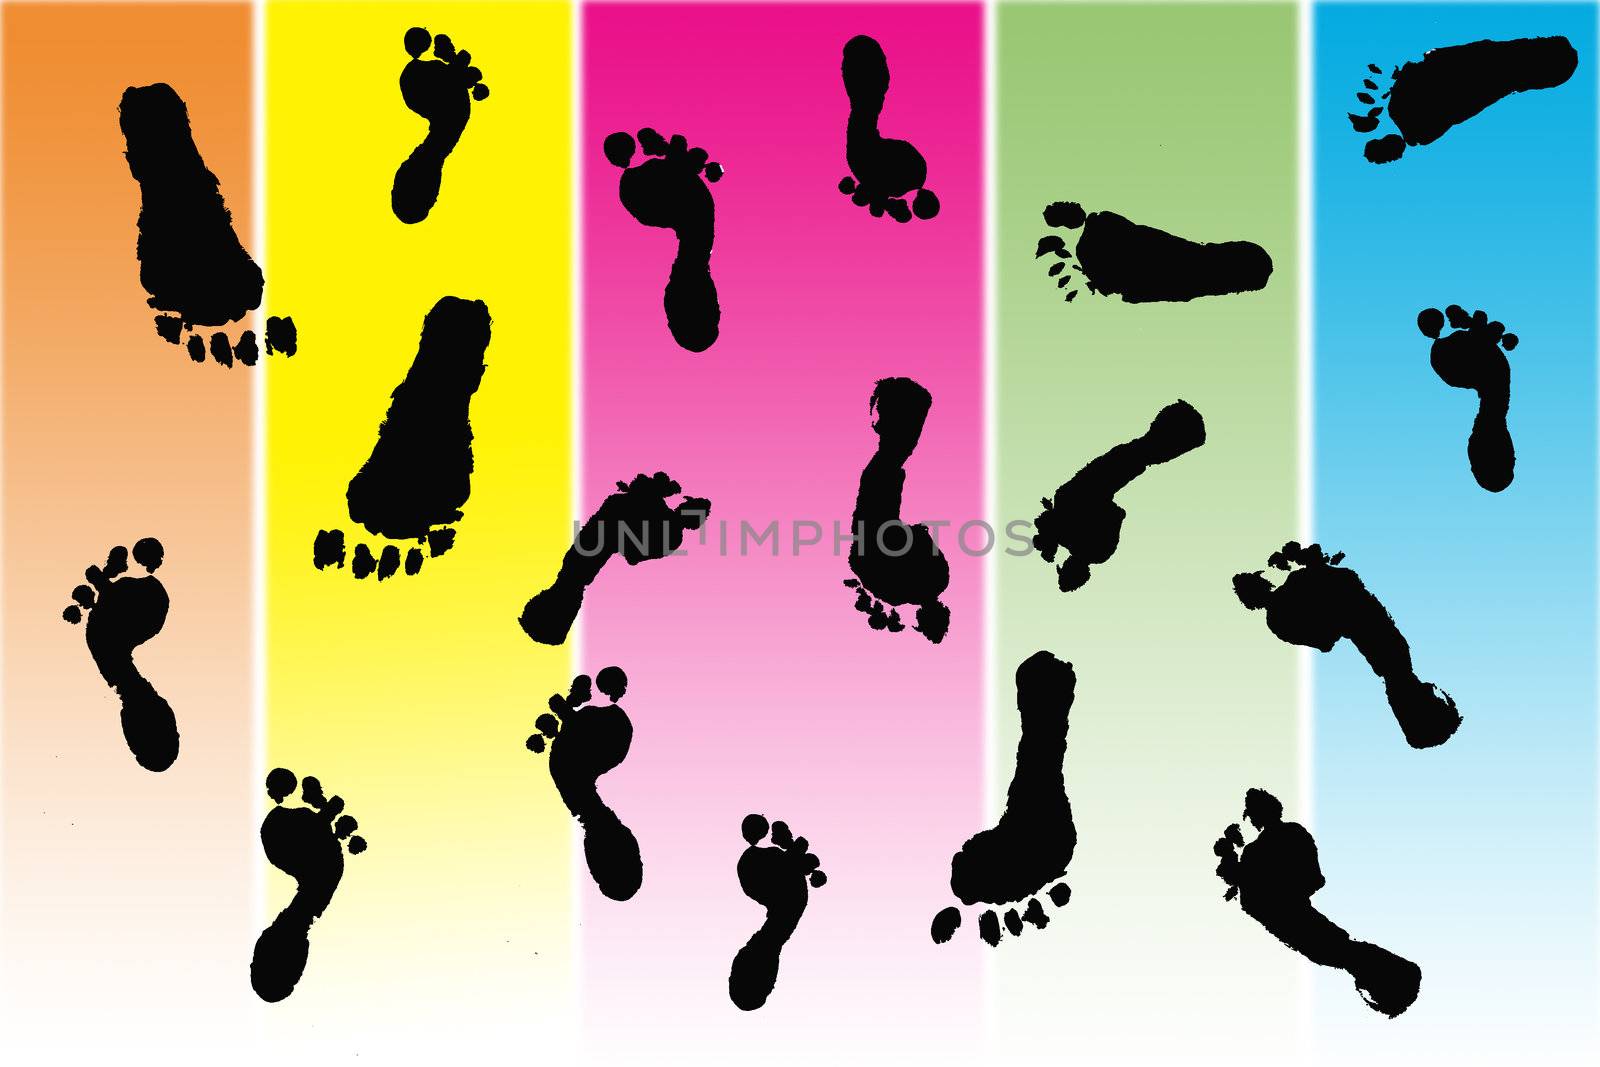 Black footprints made by children by jarenwicklund